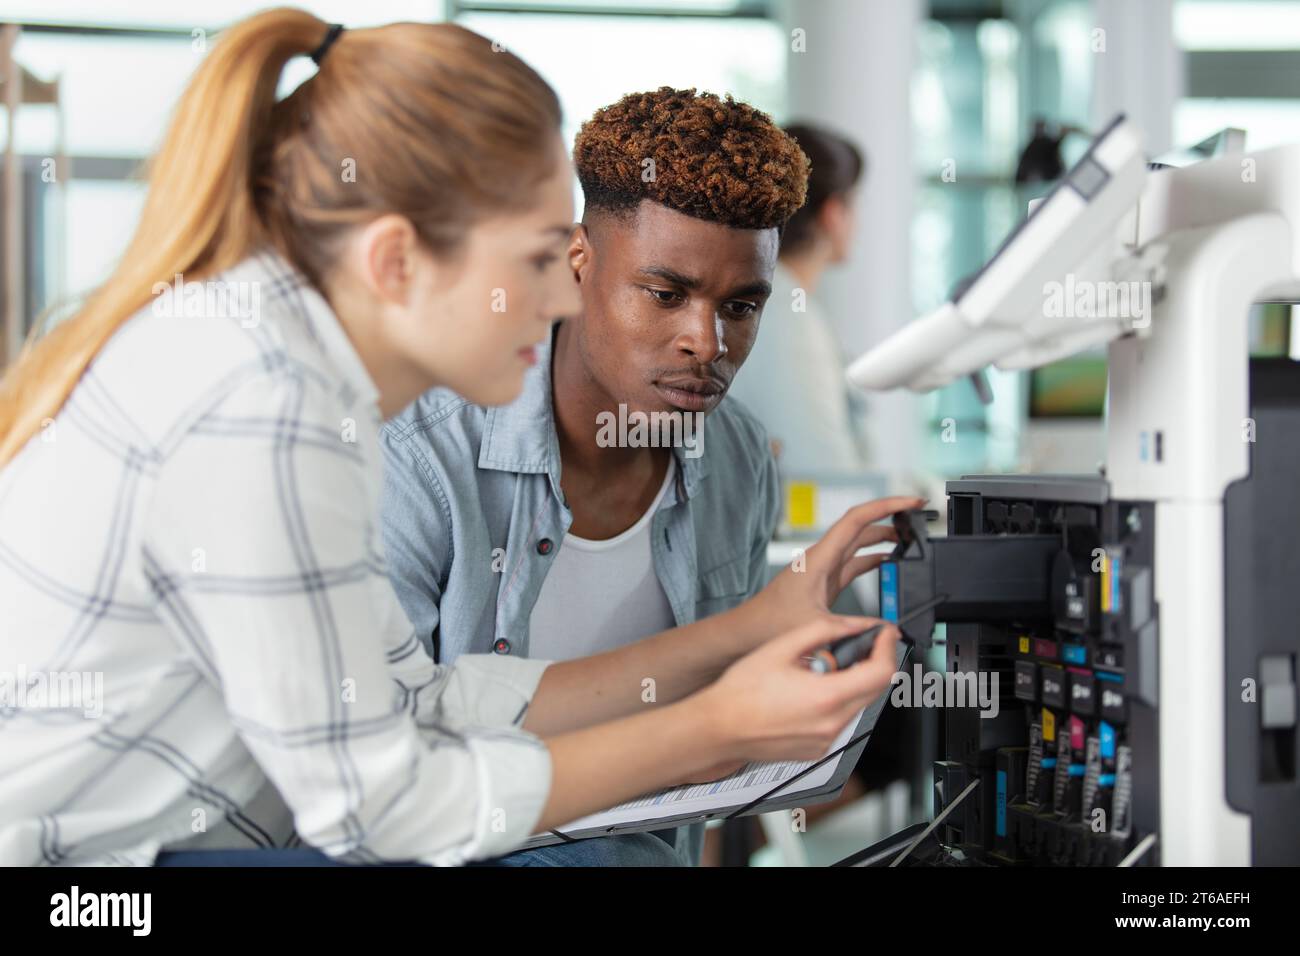 homme regardant la femme remplacer la cartouche d'encre dans l'imprimante industrielle Banque D'Images